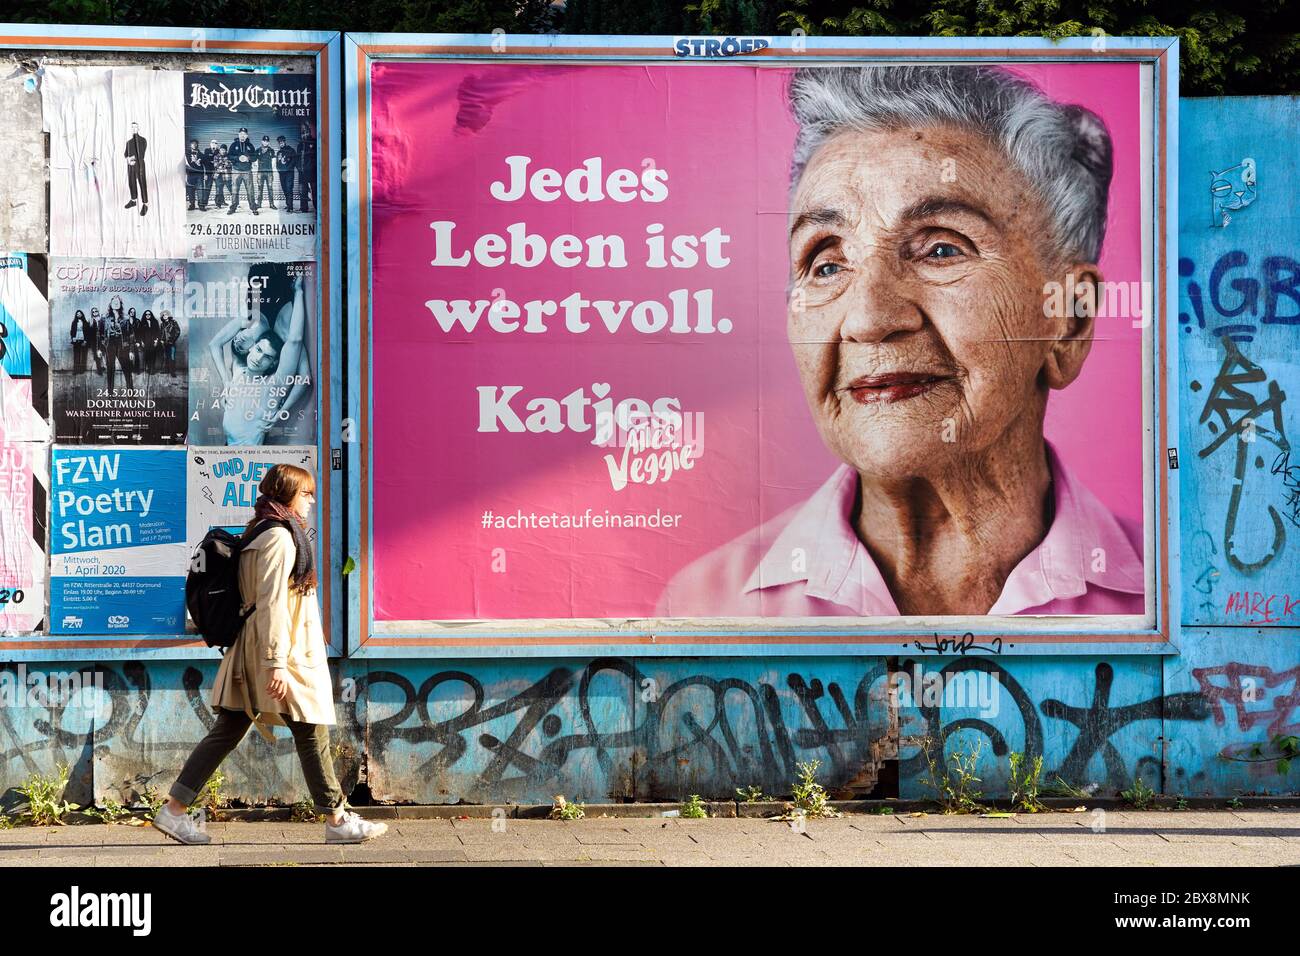 Dortmund, 6.6.2020: 'Jedes Leben ist wertvoll', Plakat des Süsswarenherstellers Katjes mit einer Anspielung auf die Black-Lives-Matters-Bewegung in den USA richtet sich in der Coronakrise an die Beachtung älterer Mitbürger. Stock Photo